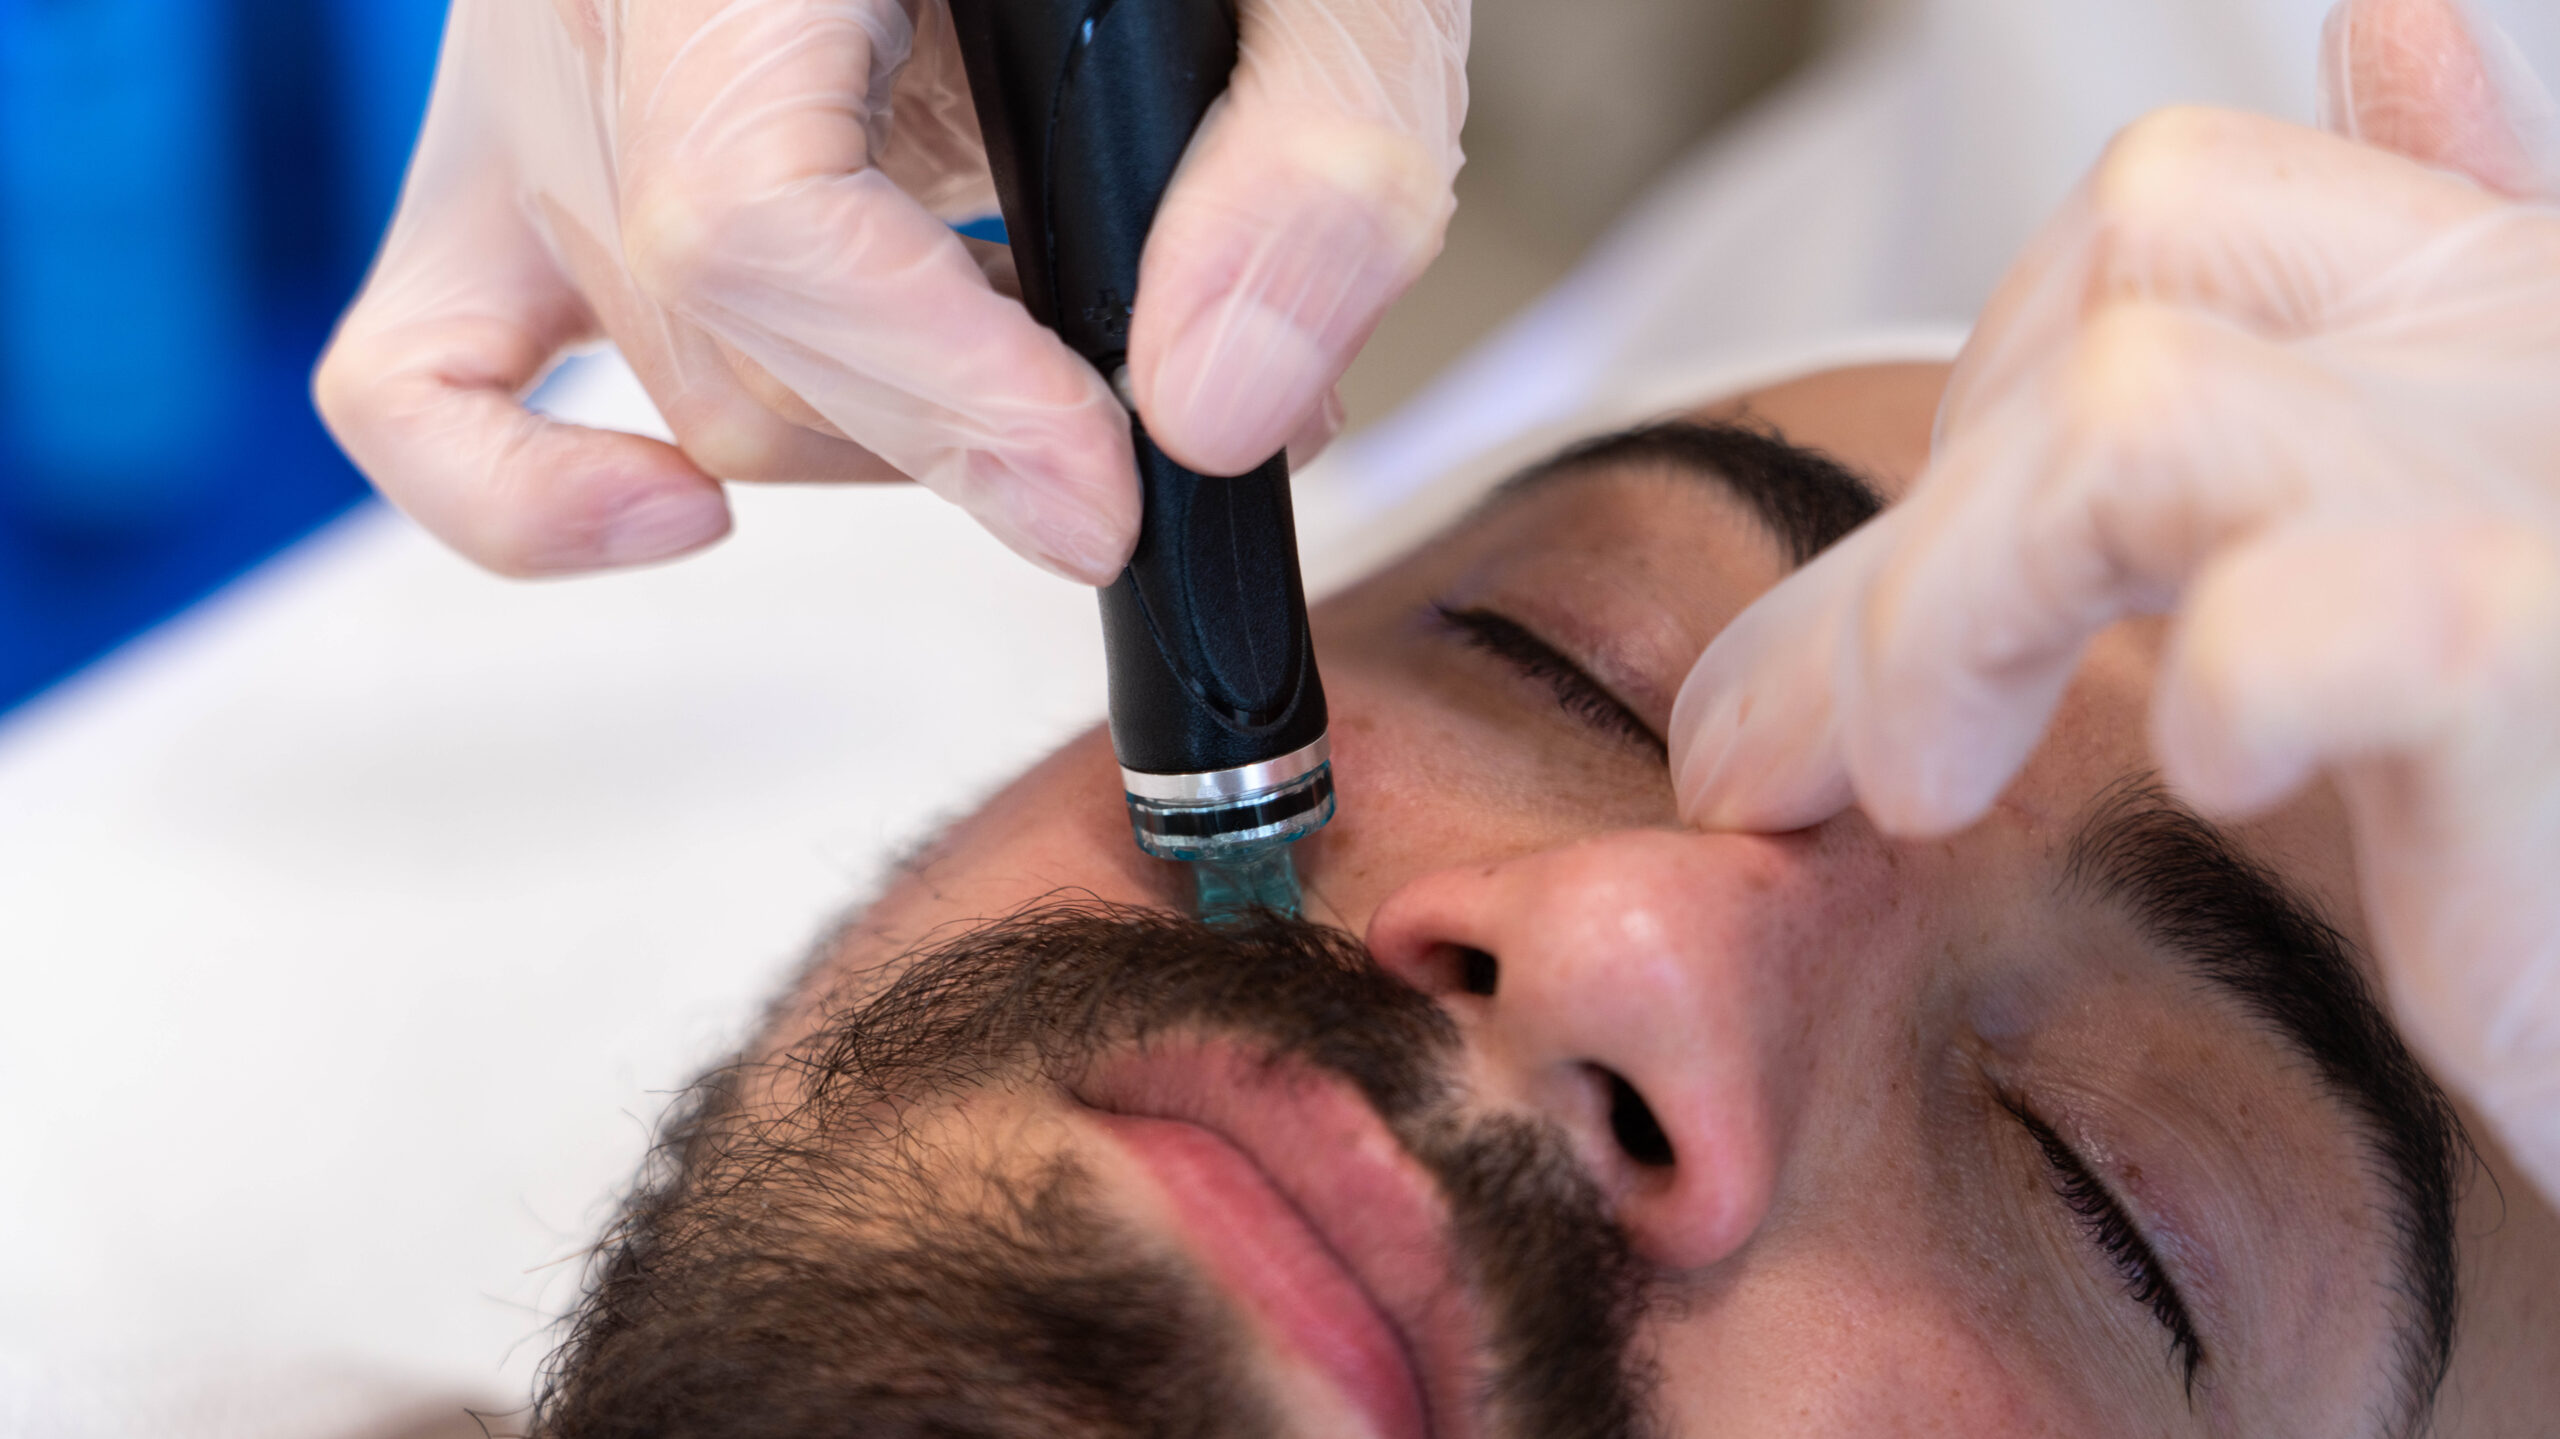 A man getting a face treatment